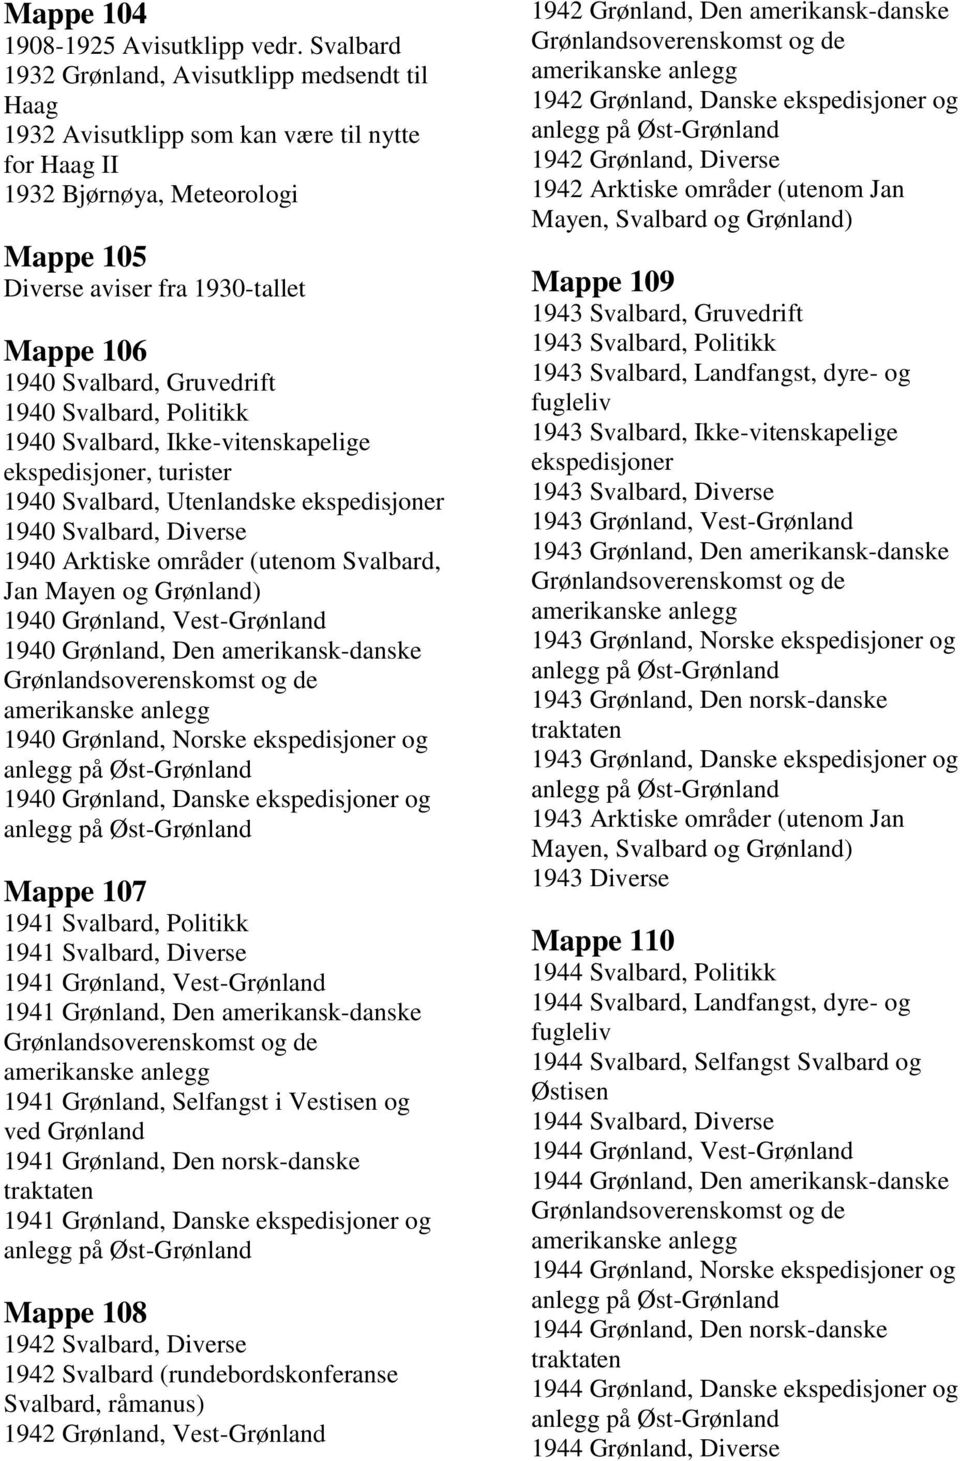 Gruvedrift 1940 Svalbard, Politikk 1940 Svalbard, Ikke-vitenskapelige, turister 1940 Svalbard, Utenlandske 1940 Svalbard, Diverse 1940 Arktiske områder (utenom Svalbard, Jan Mayen og Grønland) 1940